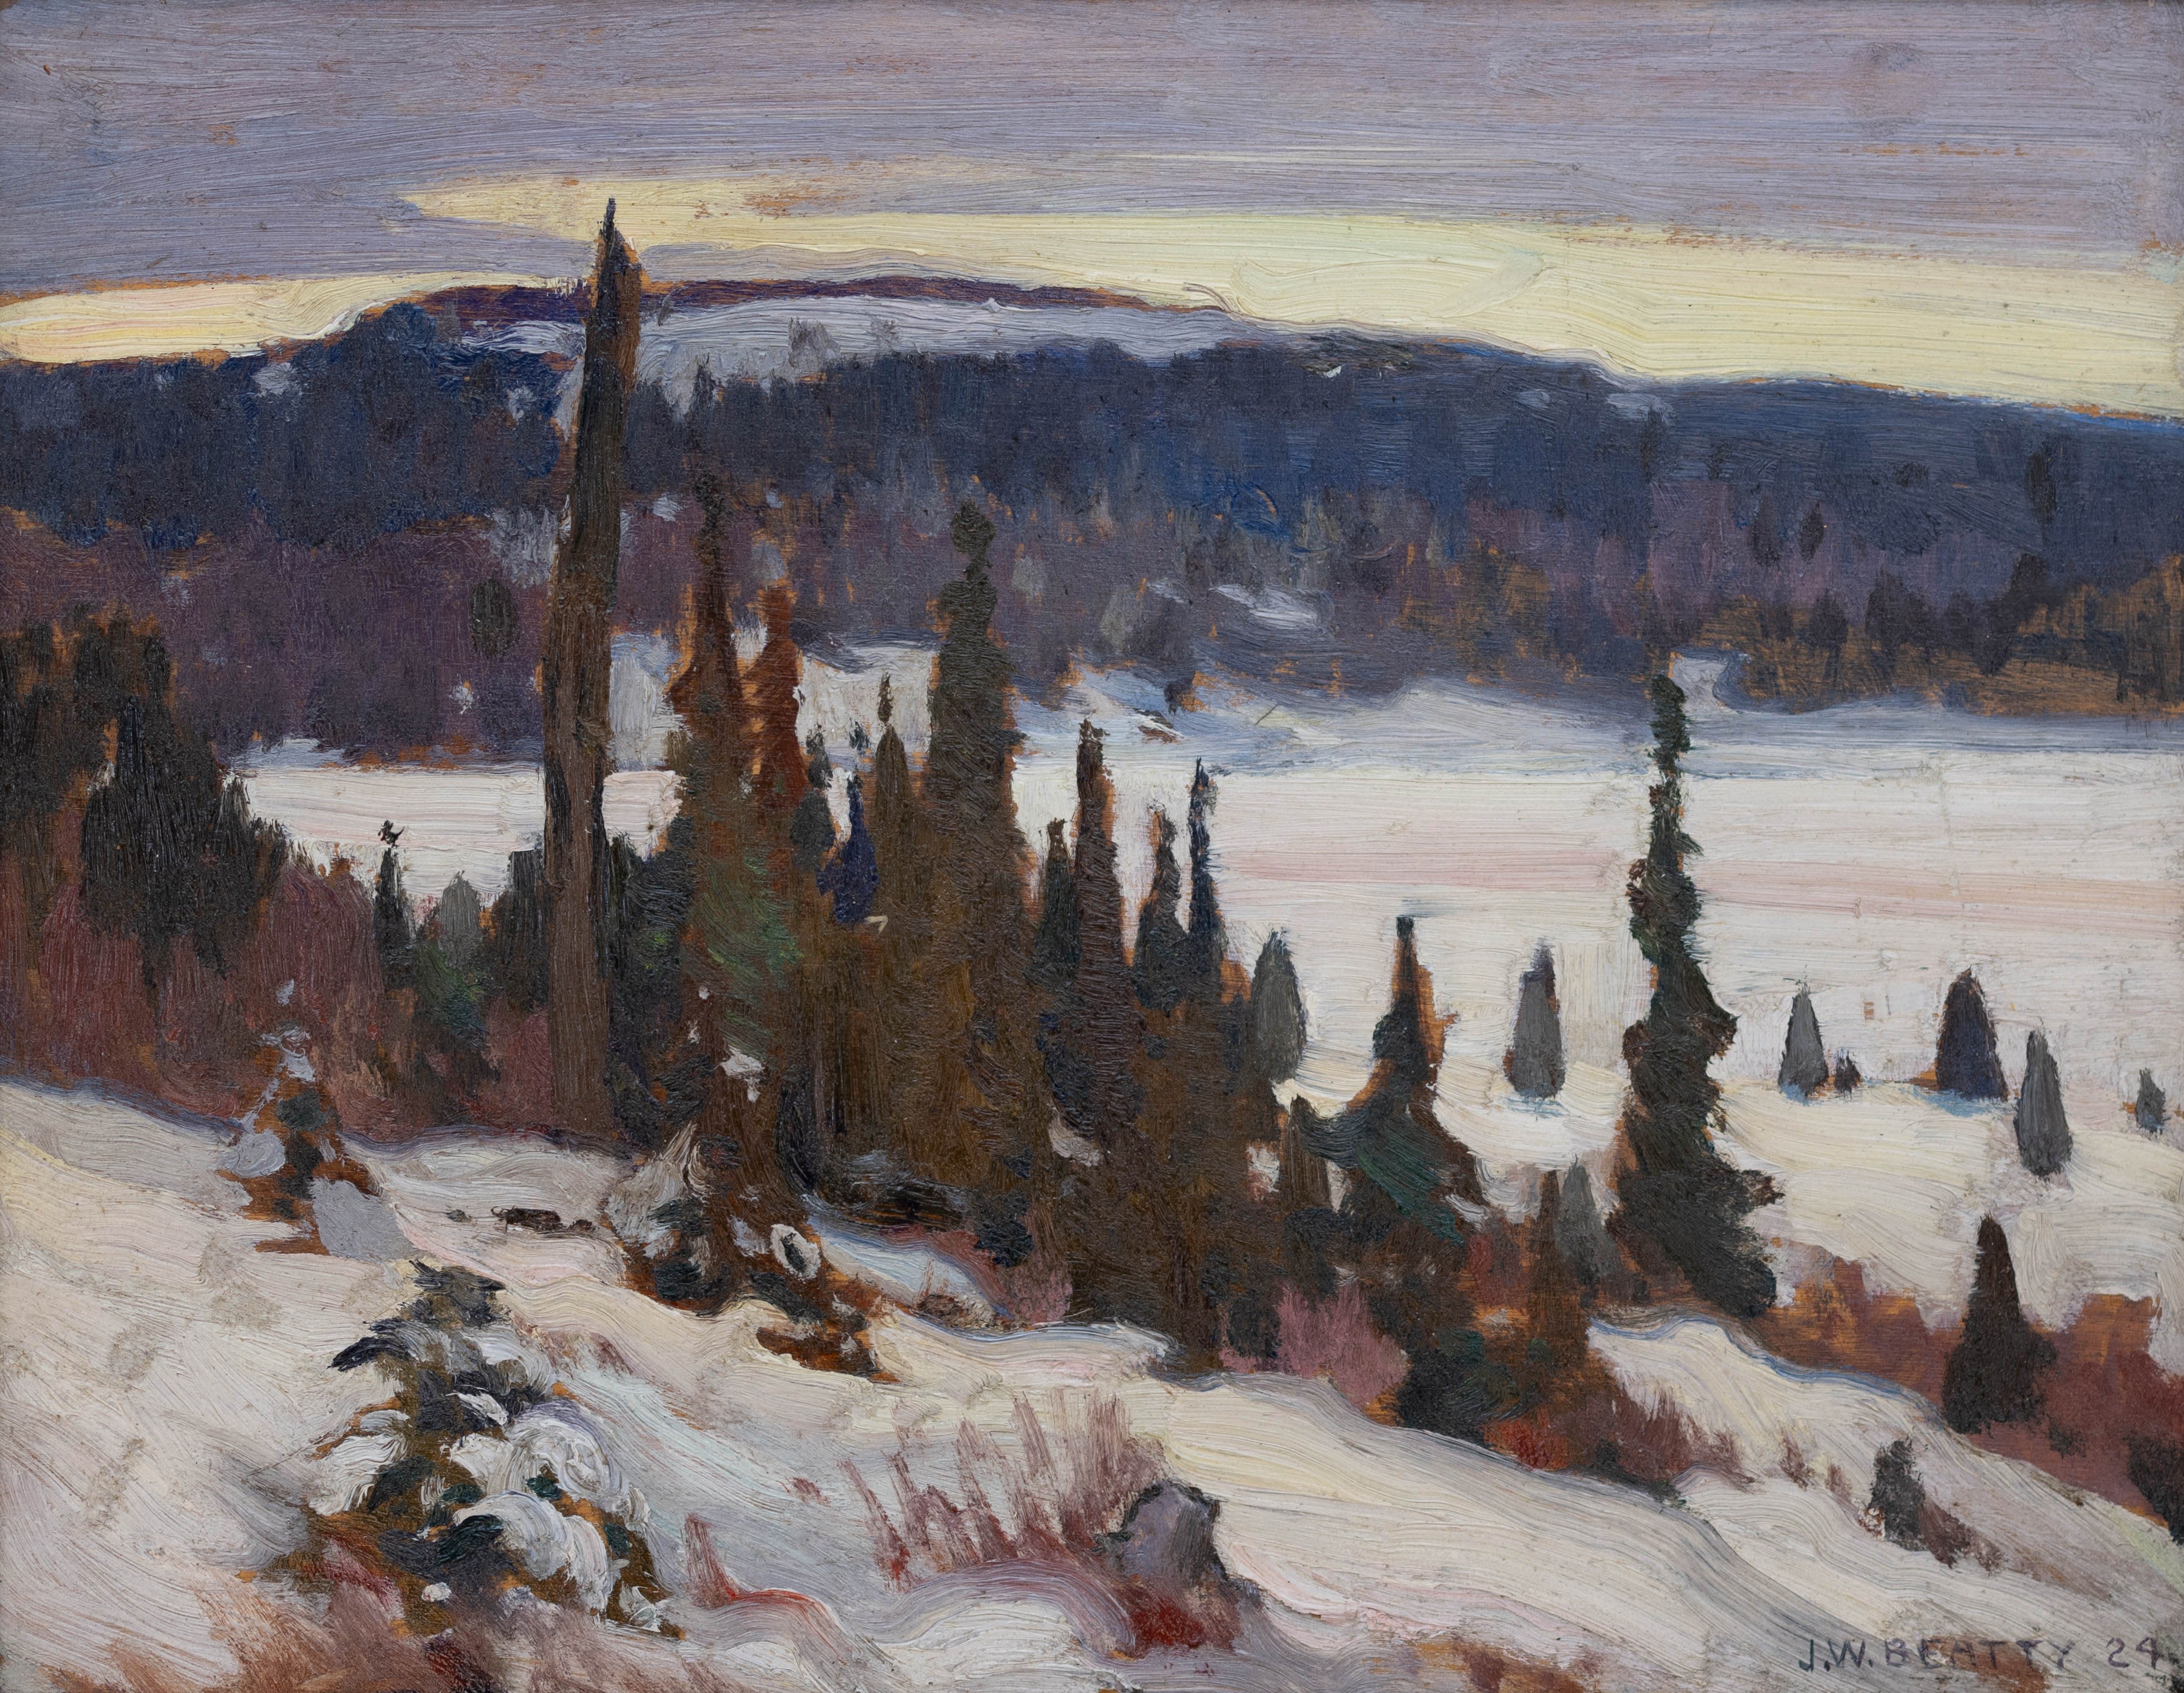 John William Beatty; Winter, 1924